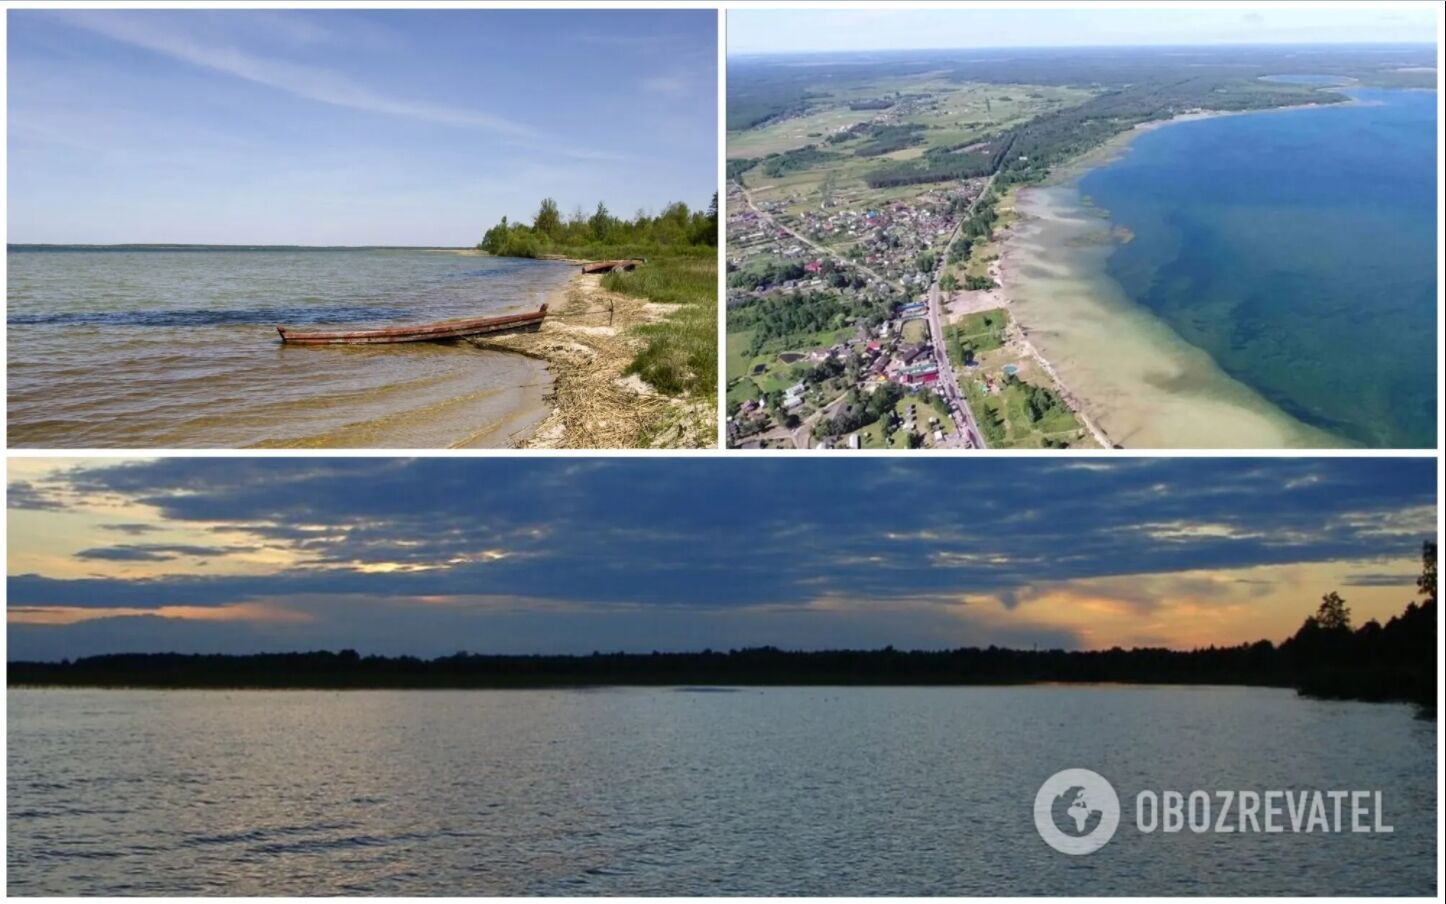 Озеро Світязь вважається найглибшим в Україні